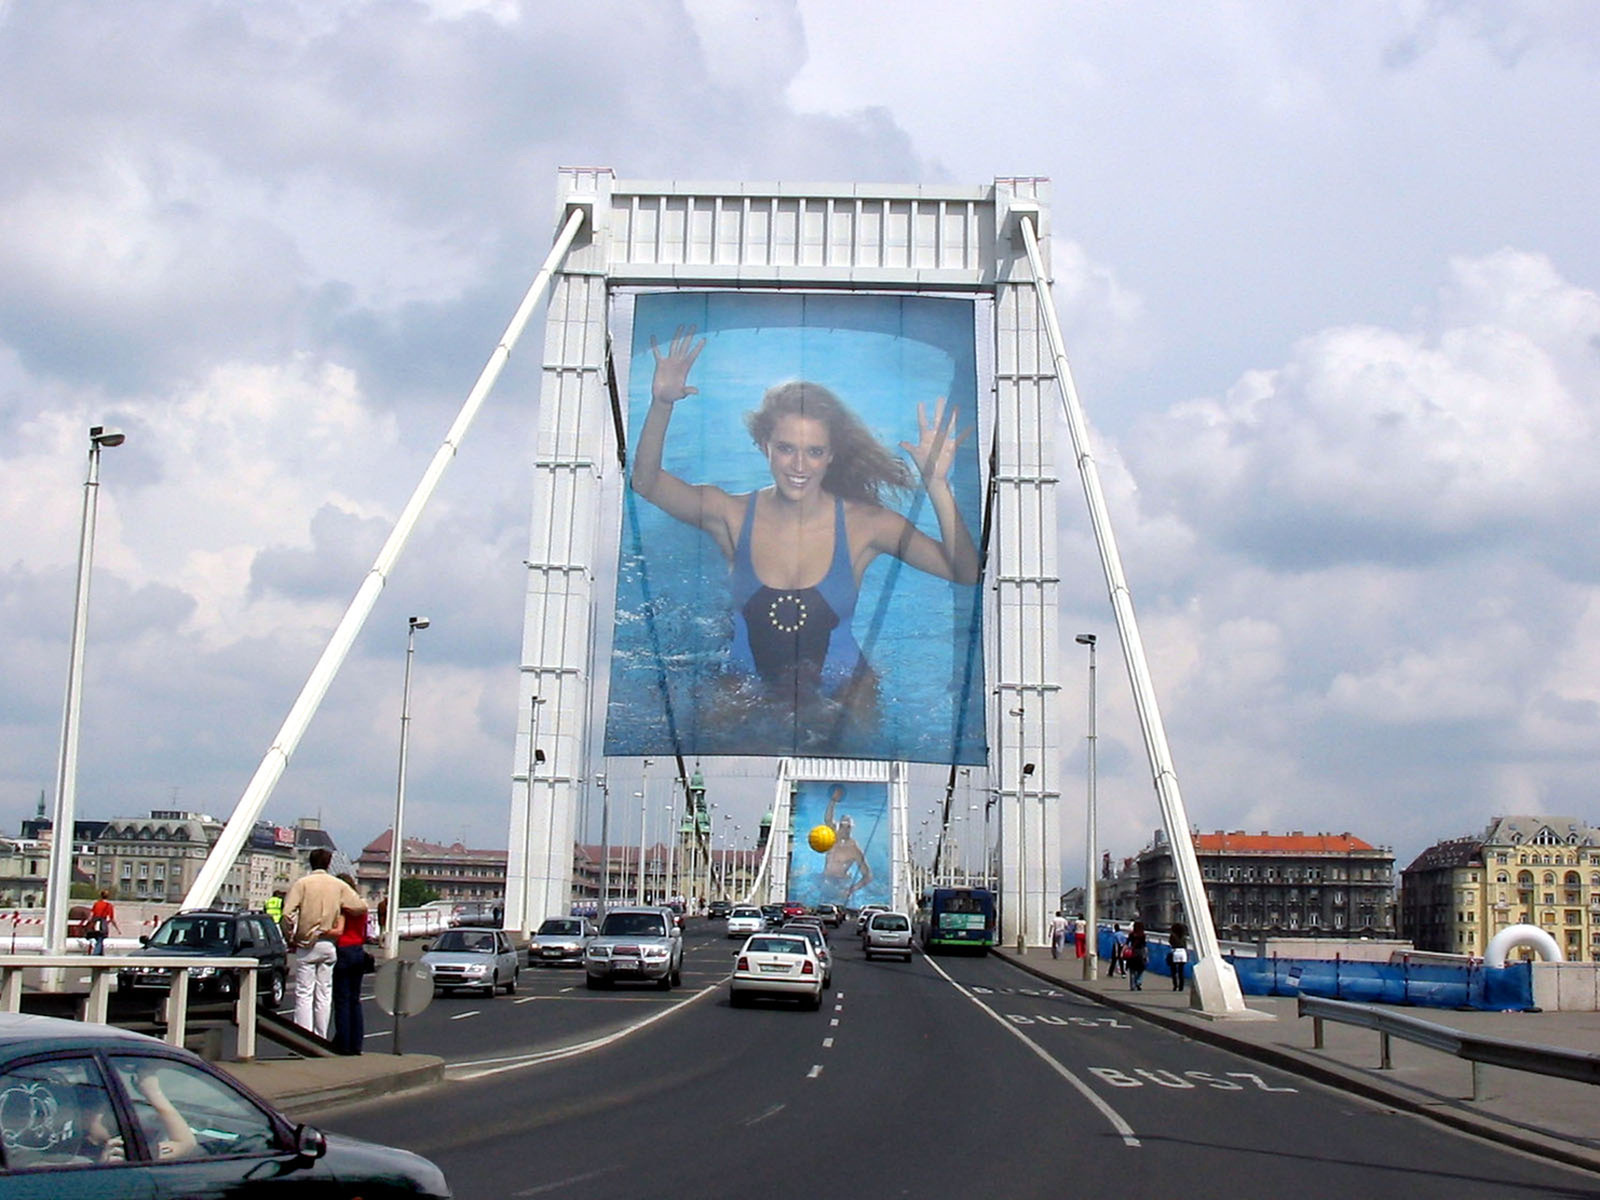 EU csatlakozás napja 2004 - Erzsébet híd